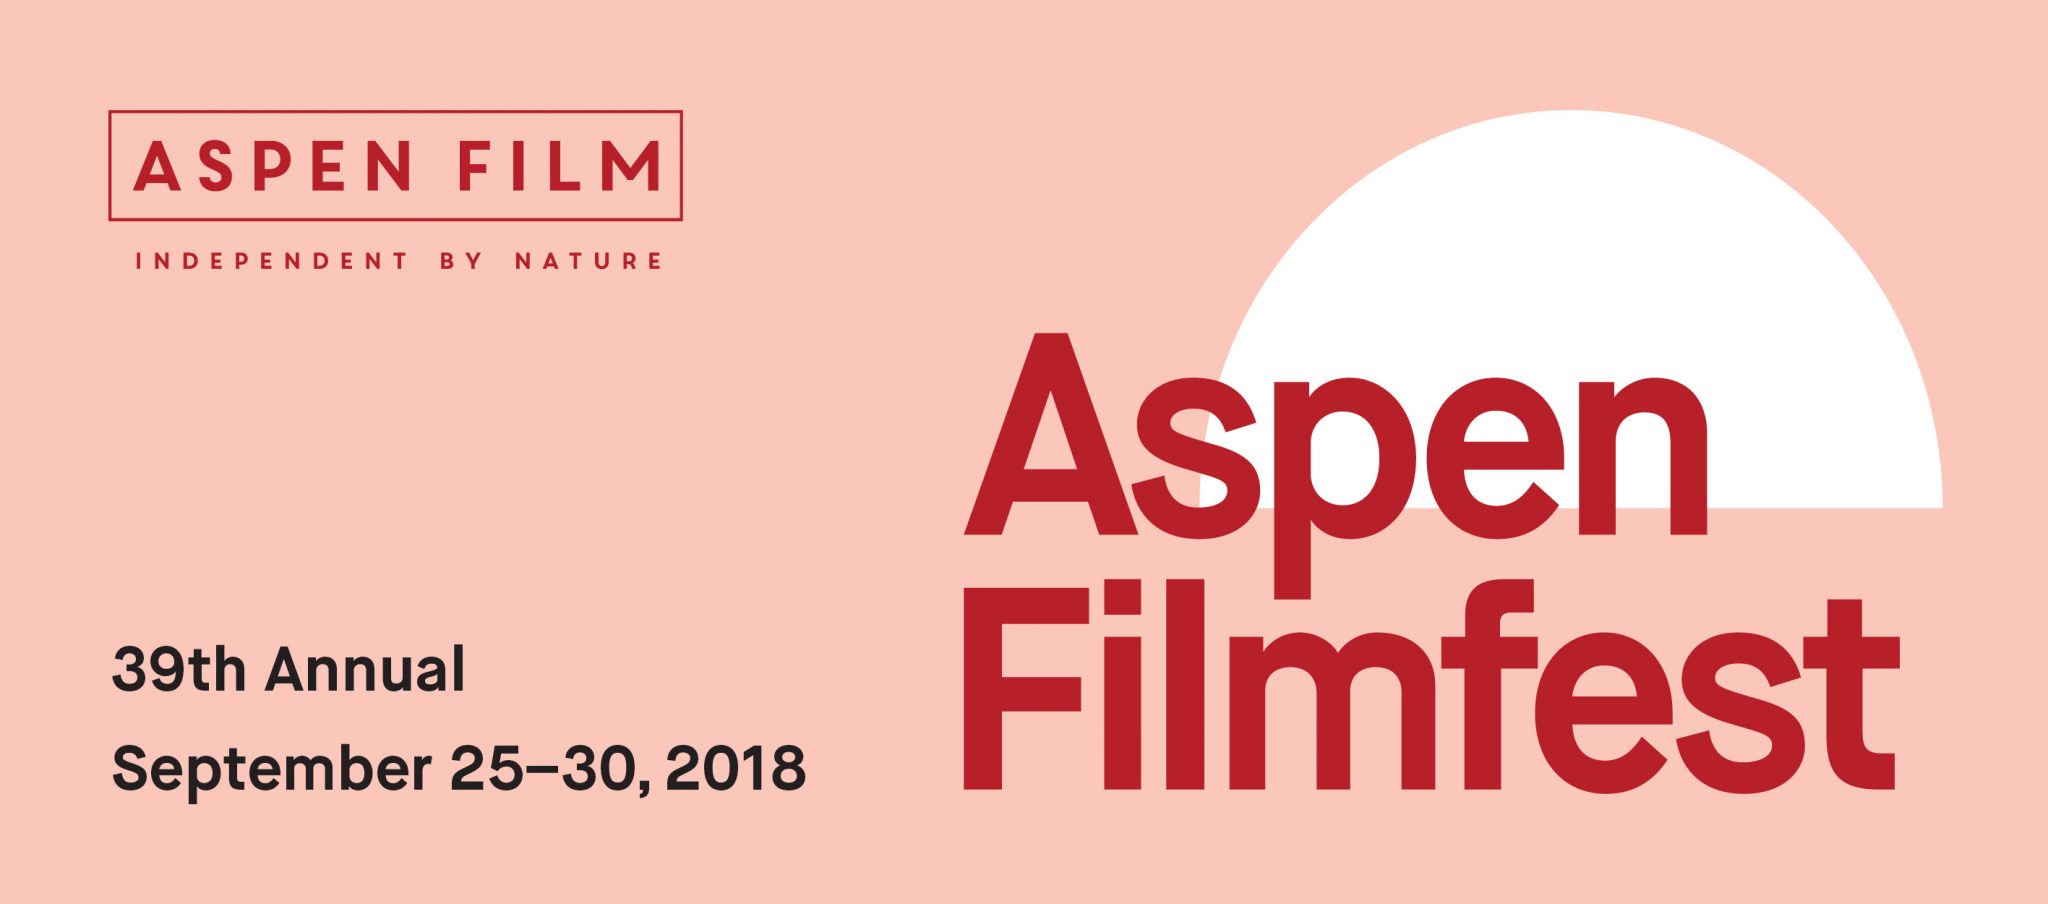 ASPEN FILM ANNOUNCES 39TH ASPEN FILMFEST AUDIENCE AWARD WINNERS